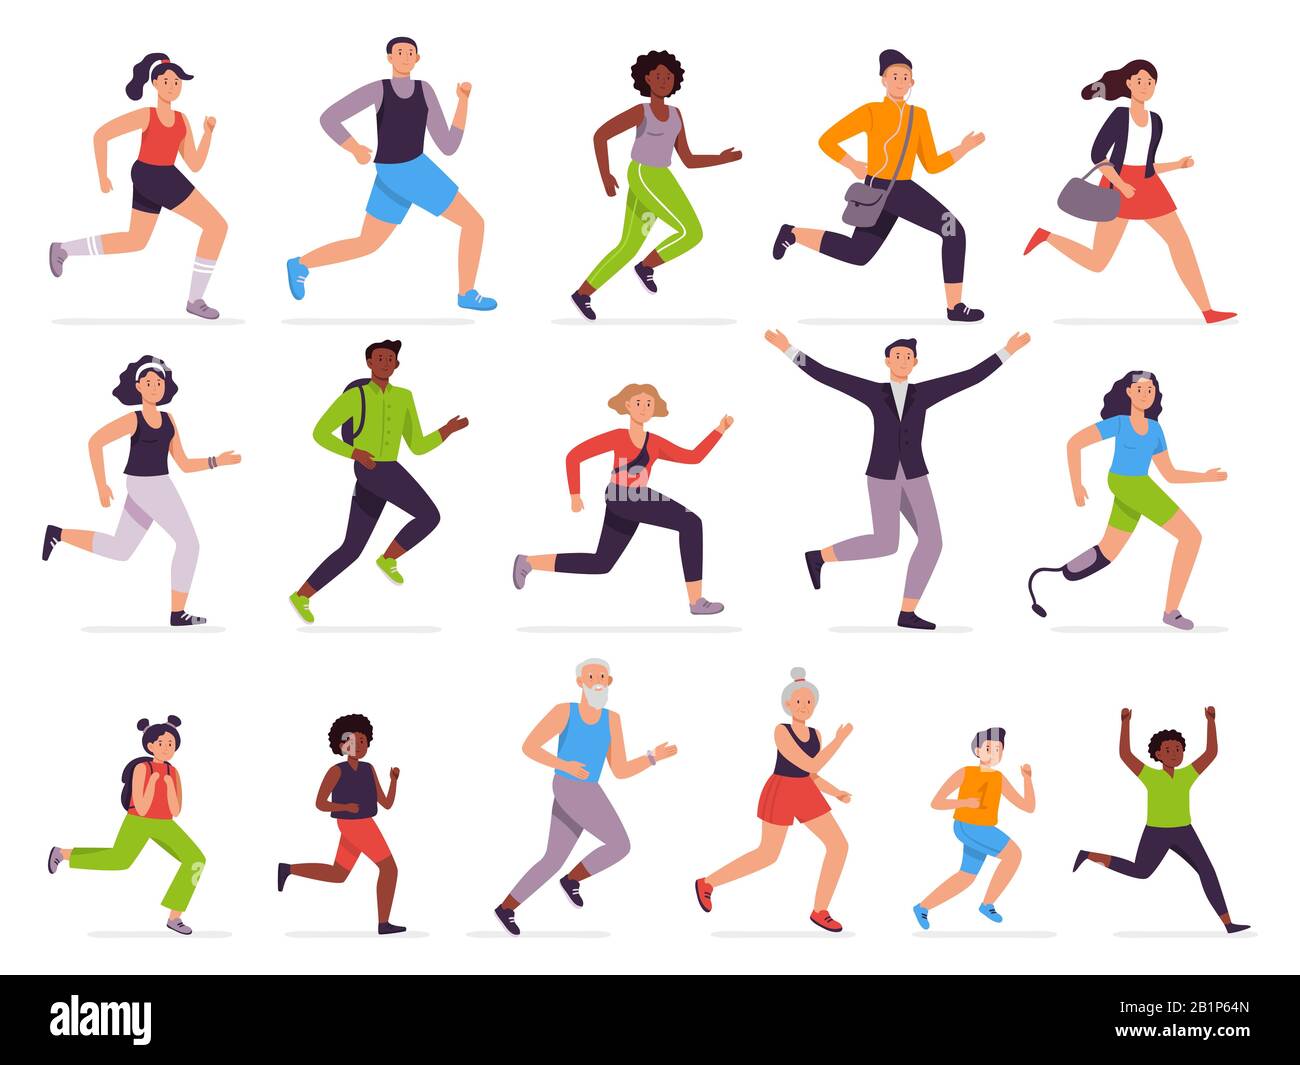 Die Leute laufen. Laufende Person, schnelles Mädchen und springenden Jungen. Jogging-Kinder, Mann und Frau. Vektorgrafiksatz für Runner Characters. Sportlertraining Stock Vektor